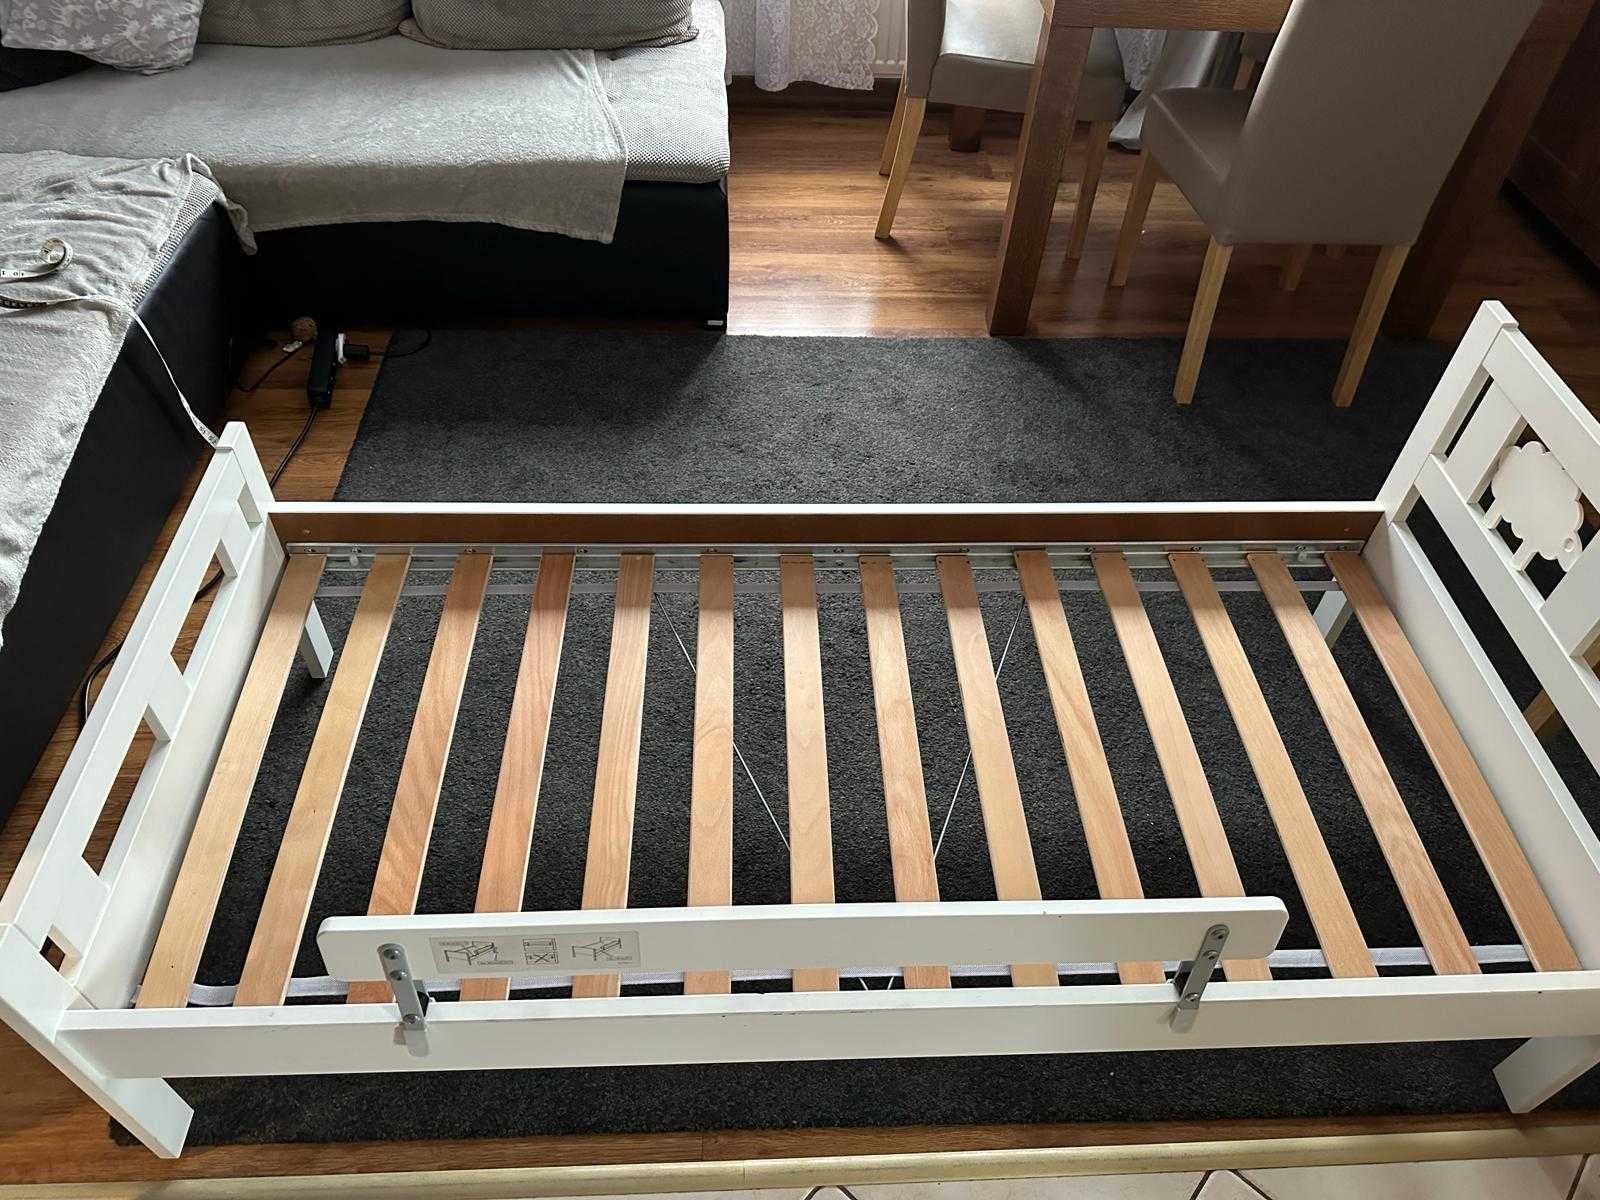 Używane łóżko dziecięce 165x75 IKEA KRITTER z barierką